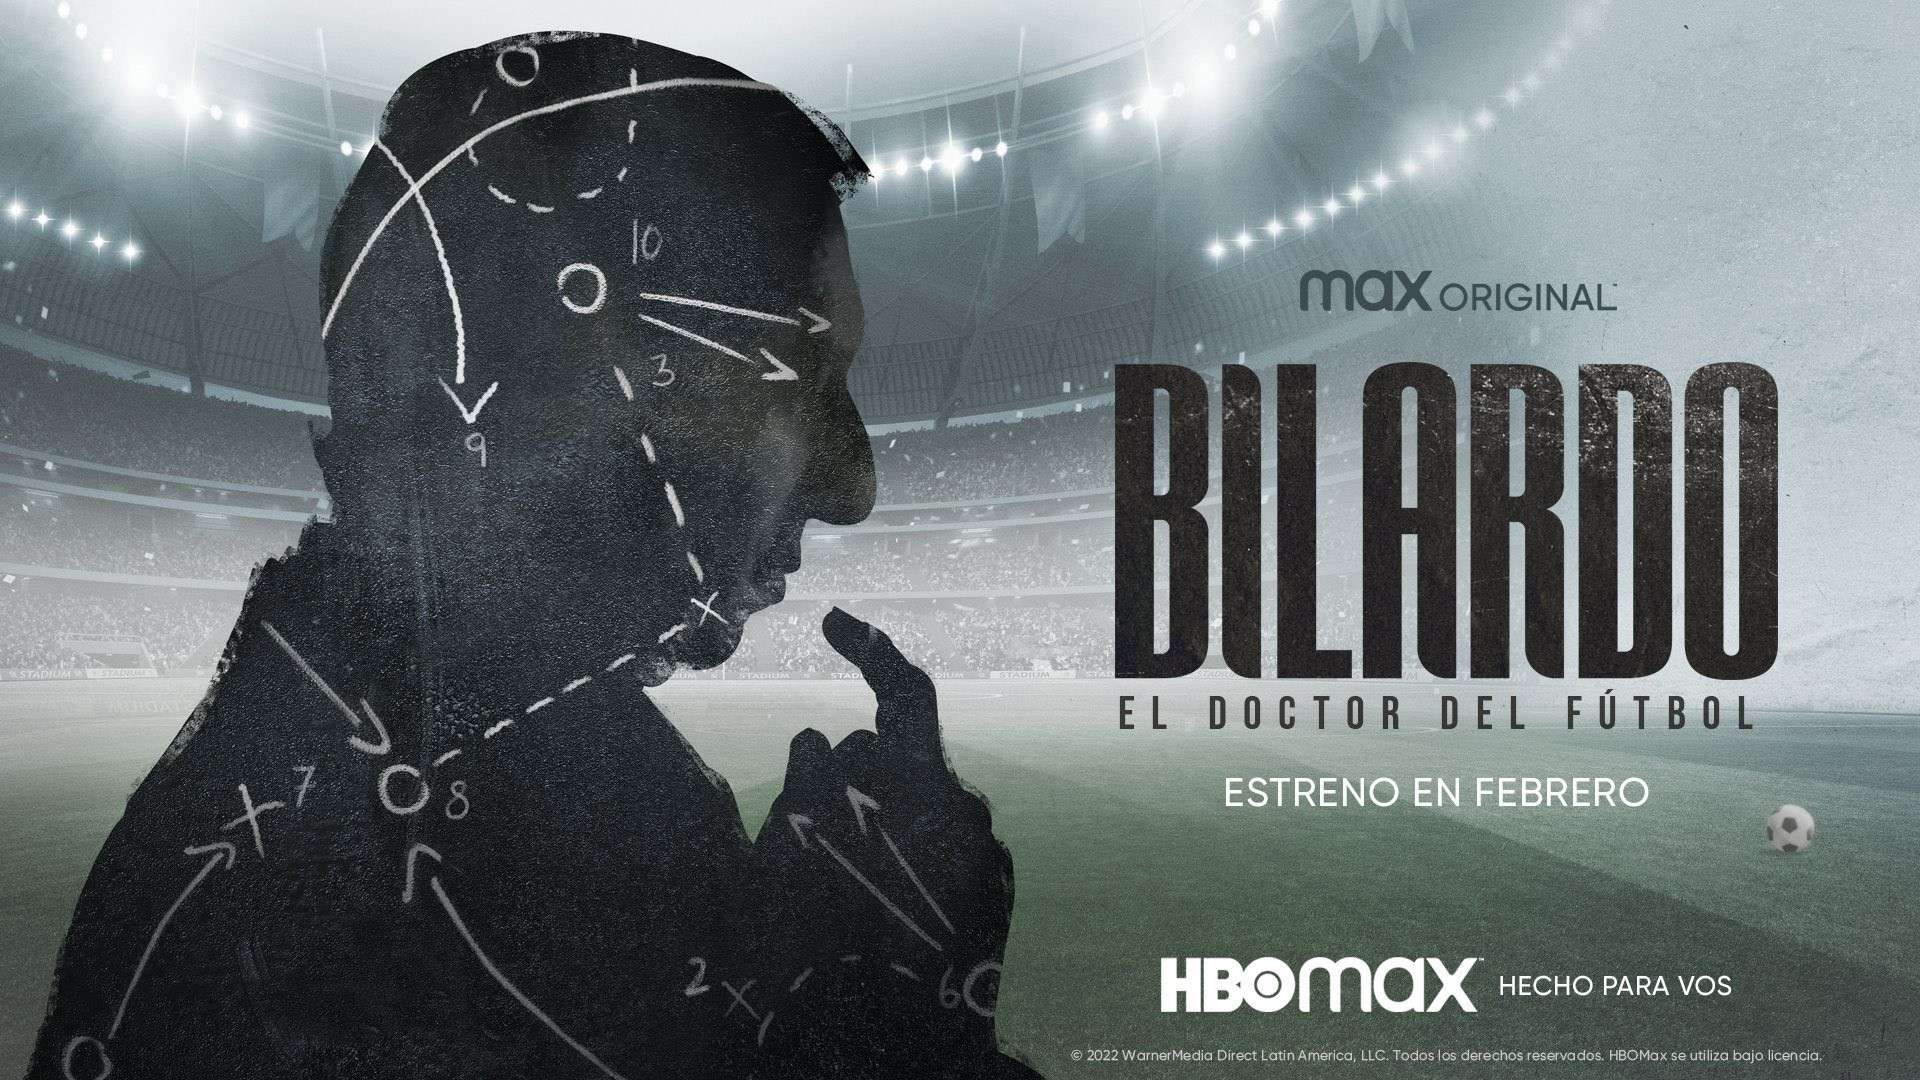 La imagen oficial de la serie de Carlos Bilardo en HBO Max